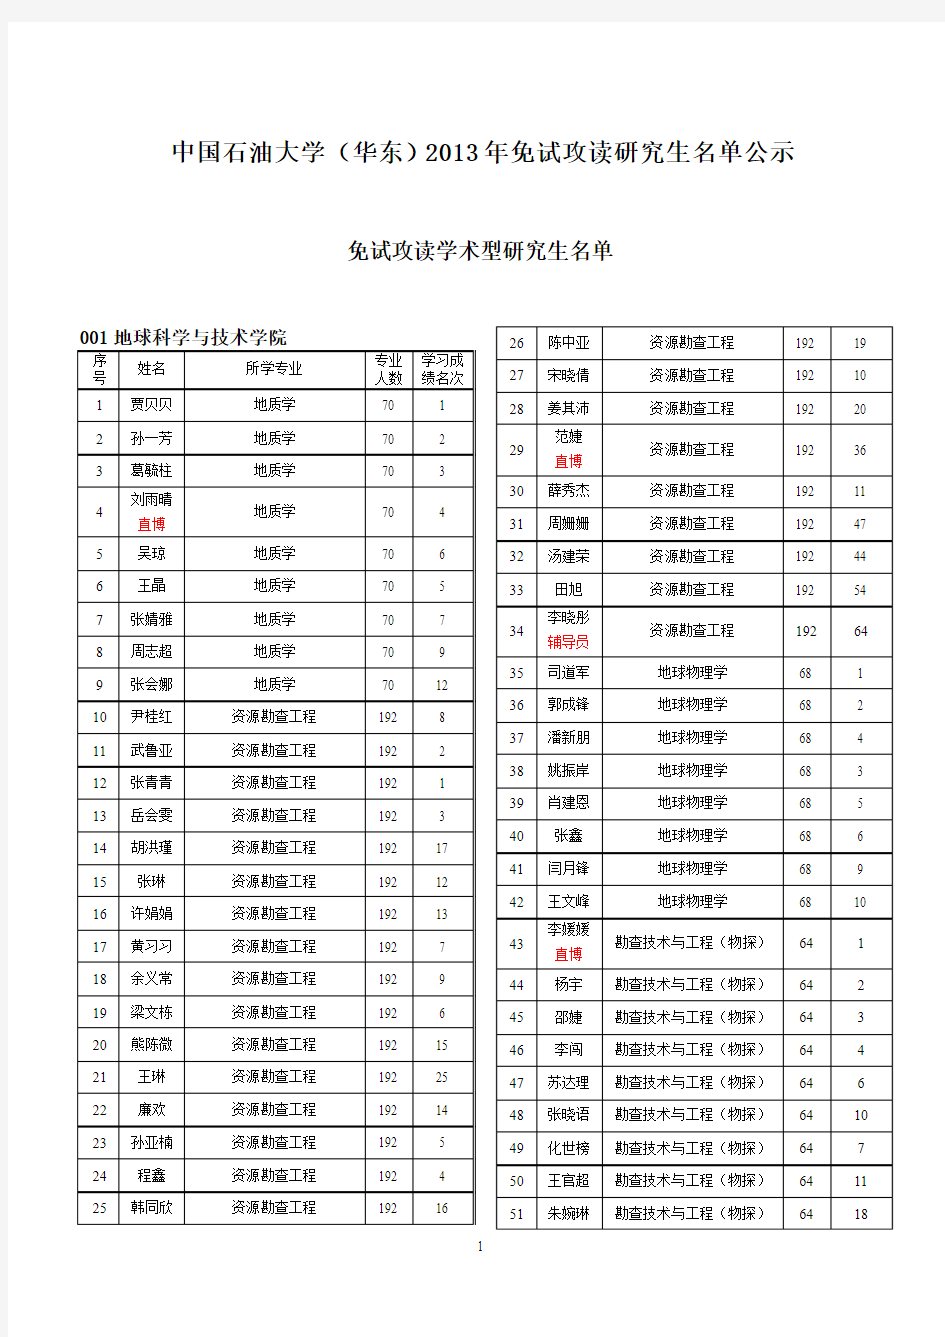 中国石油大学(华东)2013年免试攻读研究生公示名单